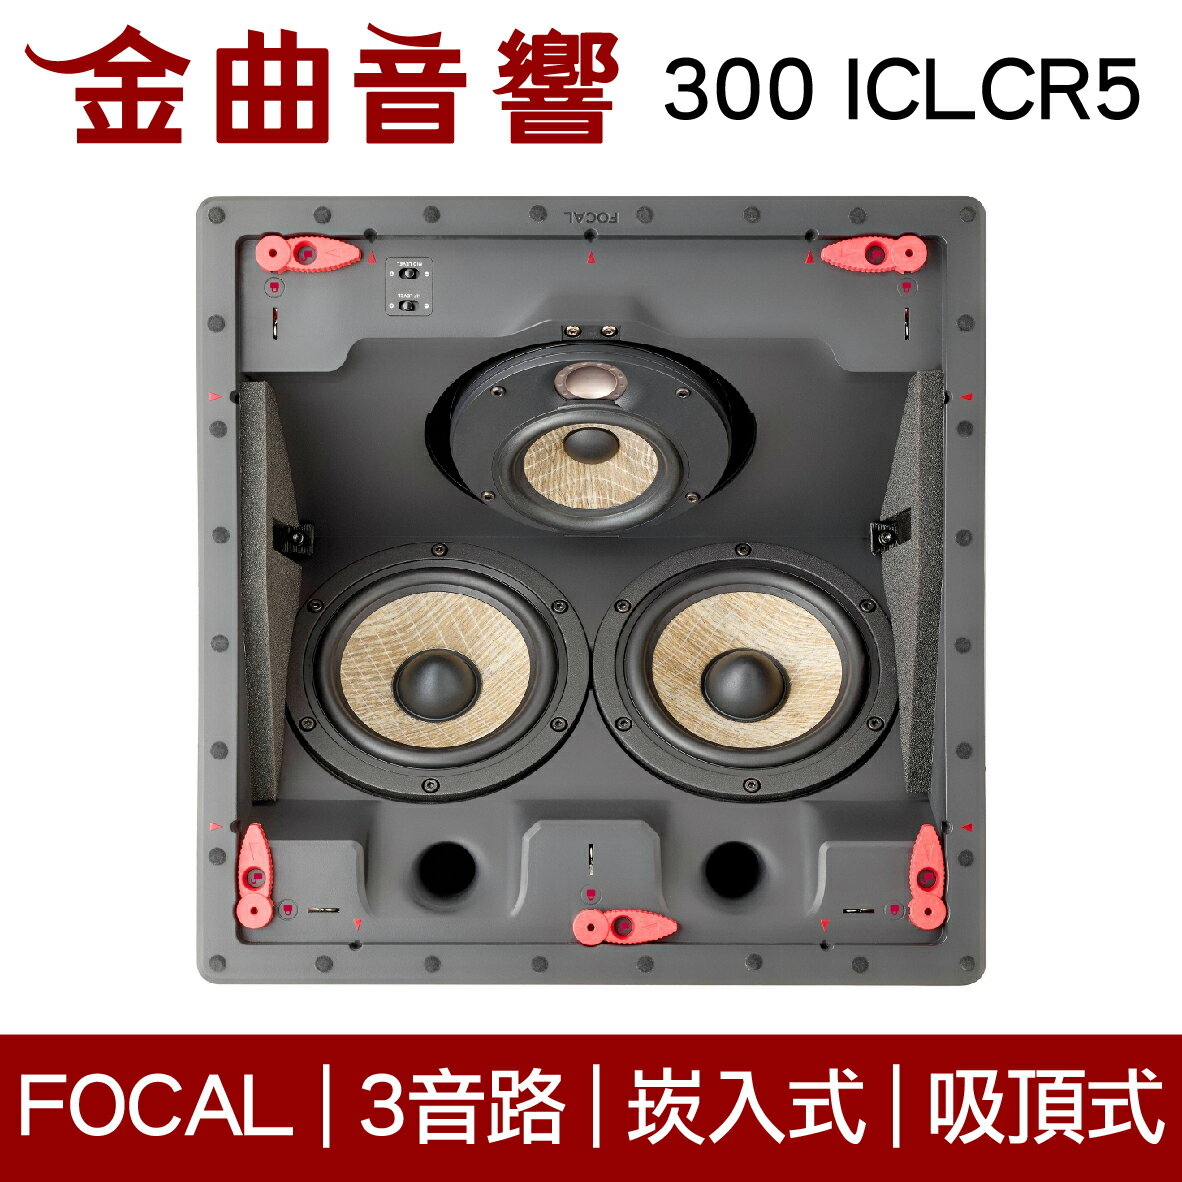 FOCAL 300 ICLCR5 3音路崁入式 喇叭 吸頂喇叭 音響（單隻）| 金曲音響